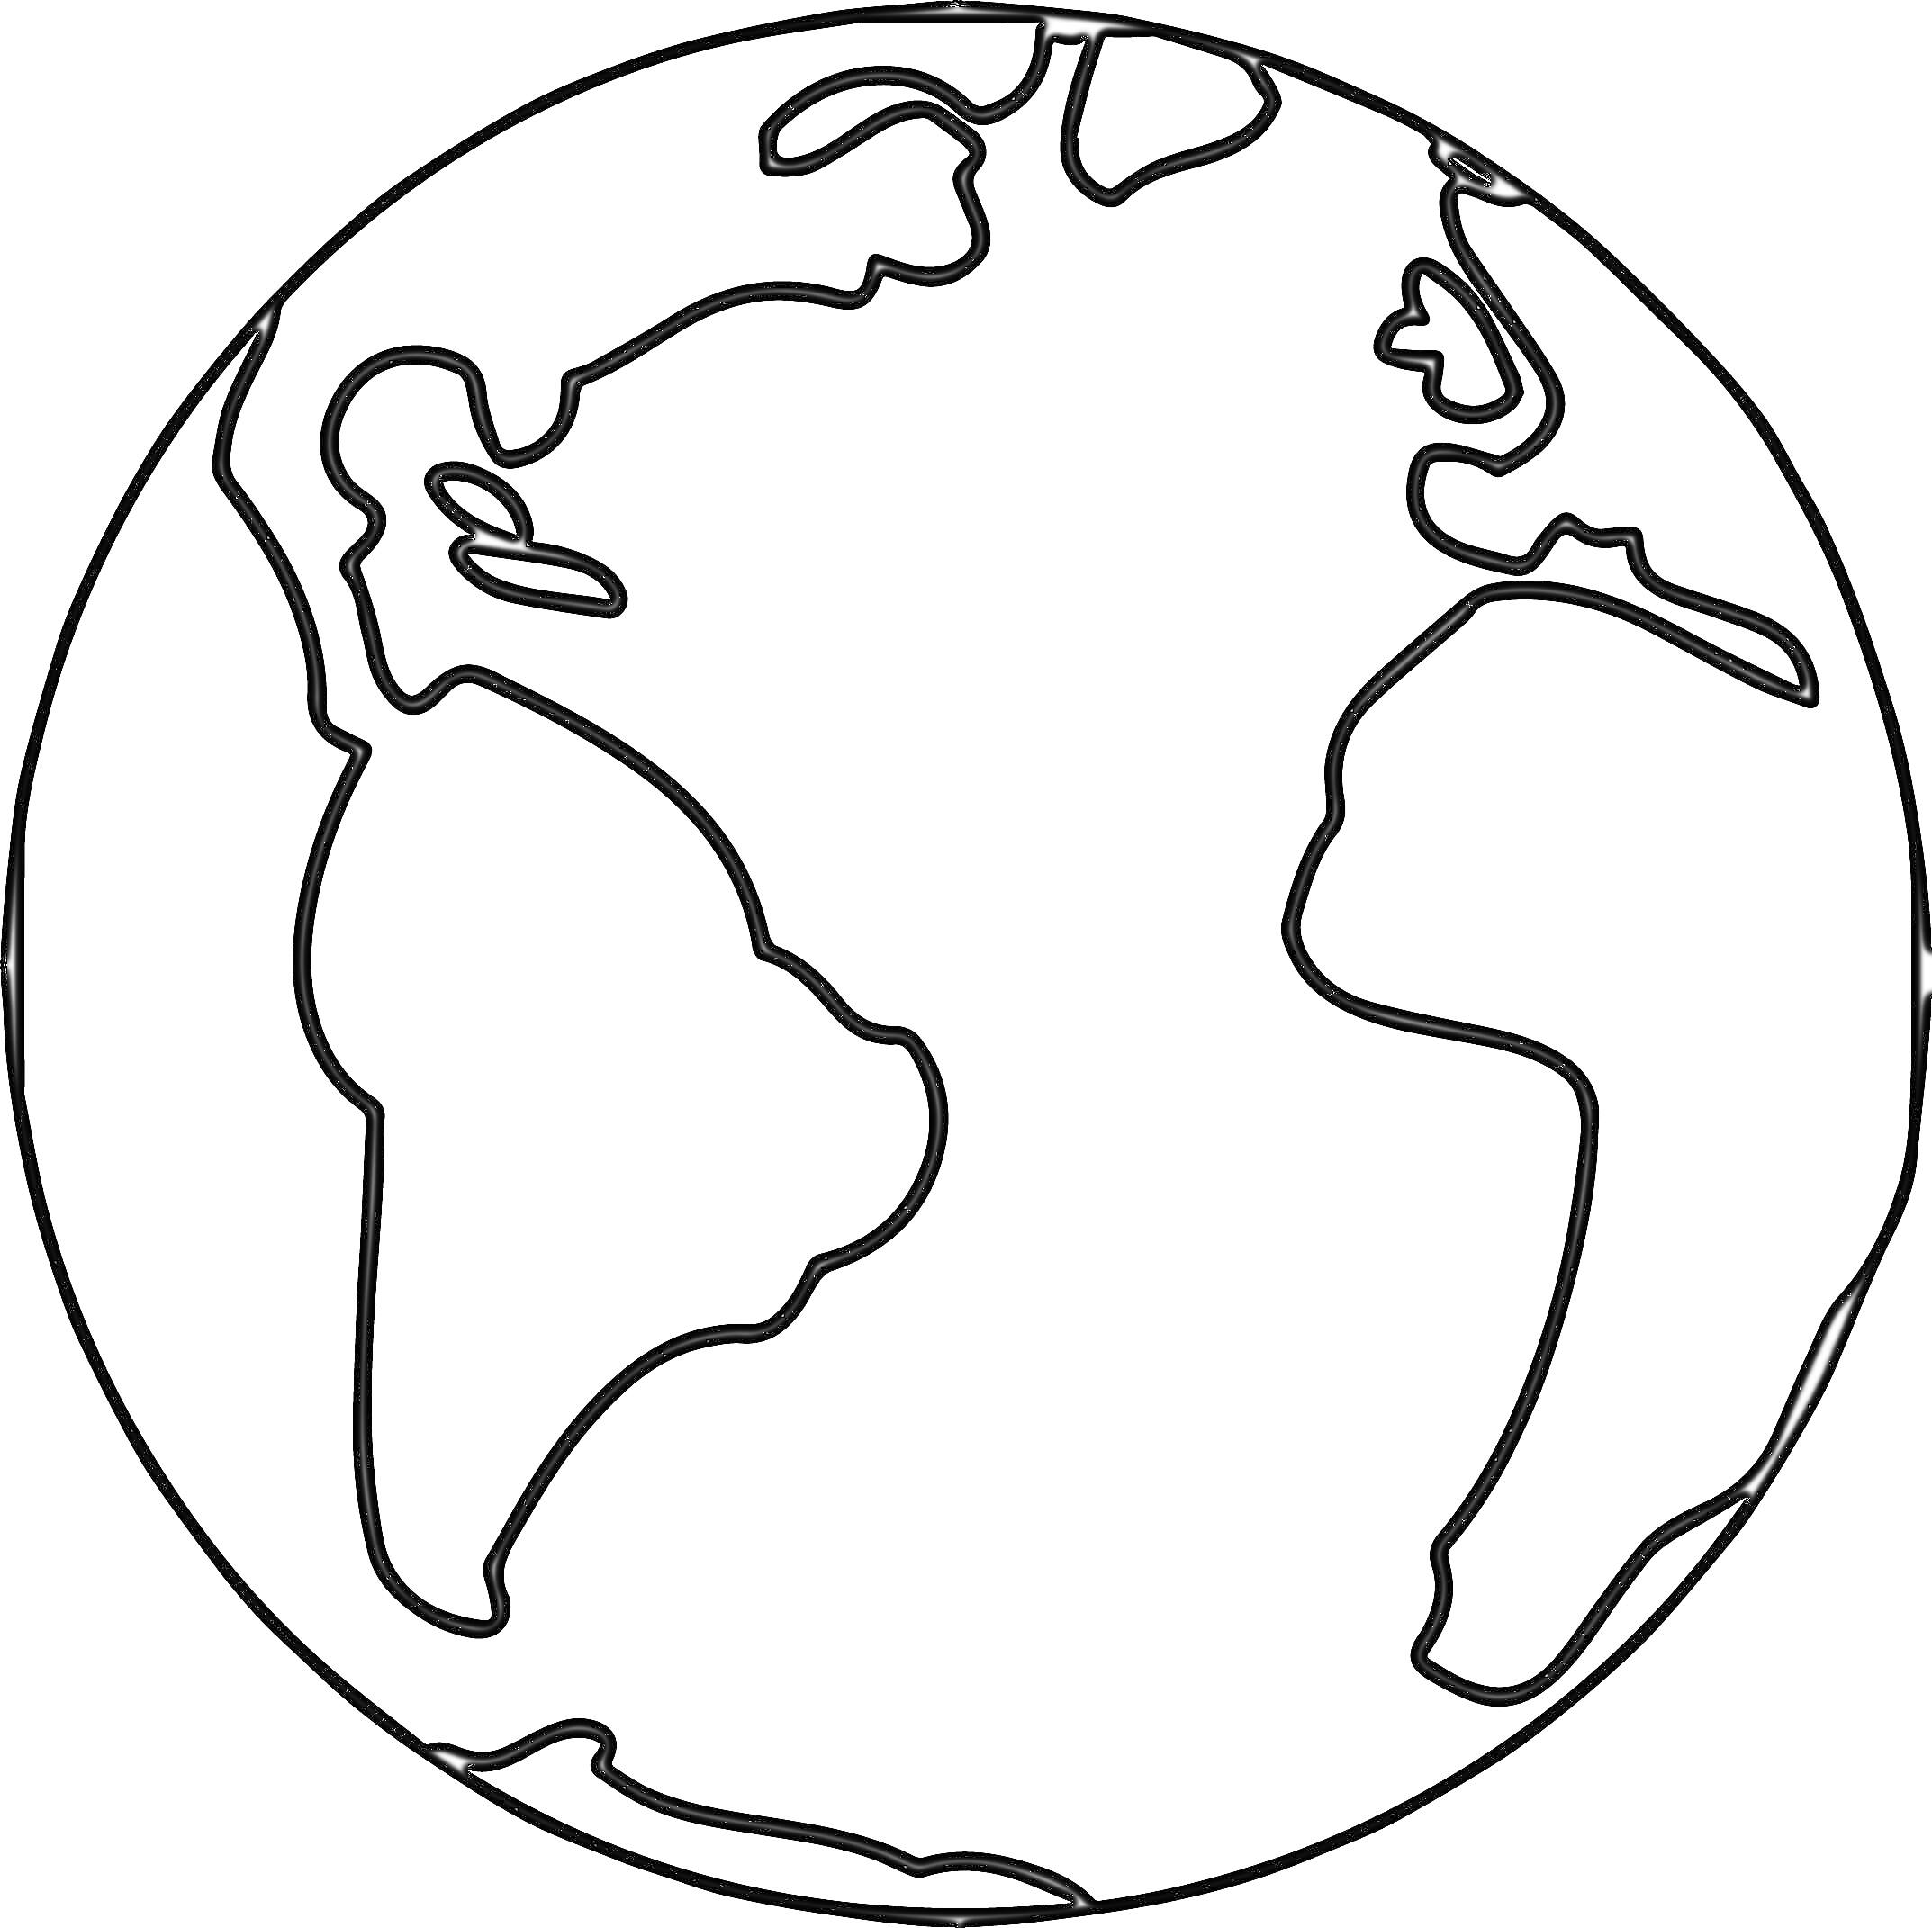 Земной шар с континентами Африки, Южной Америки и частично Северной Америки и Европы